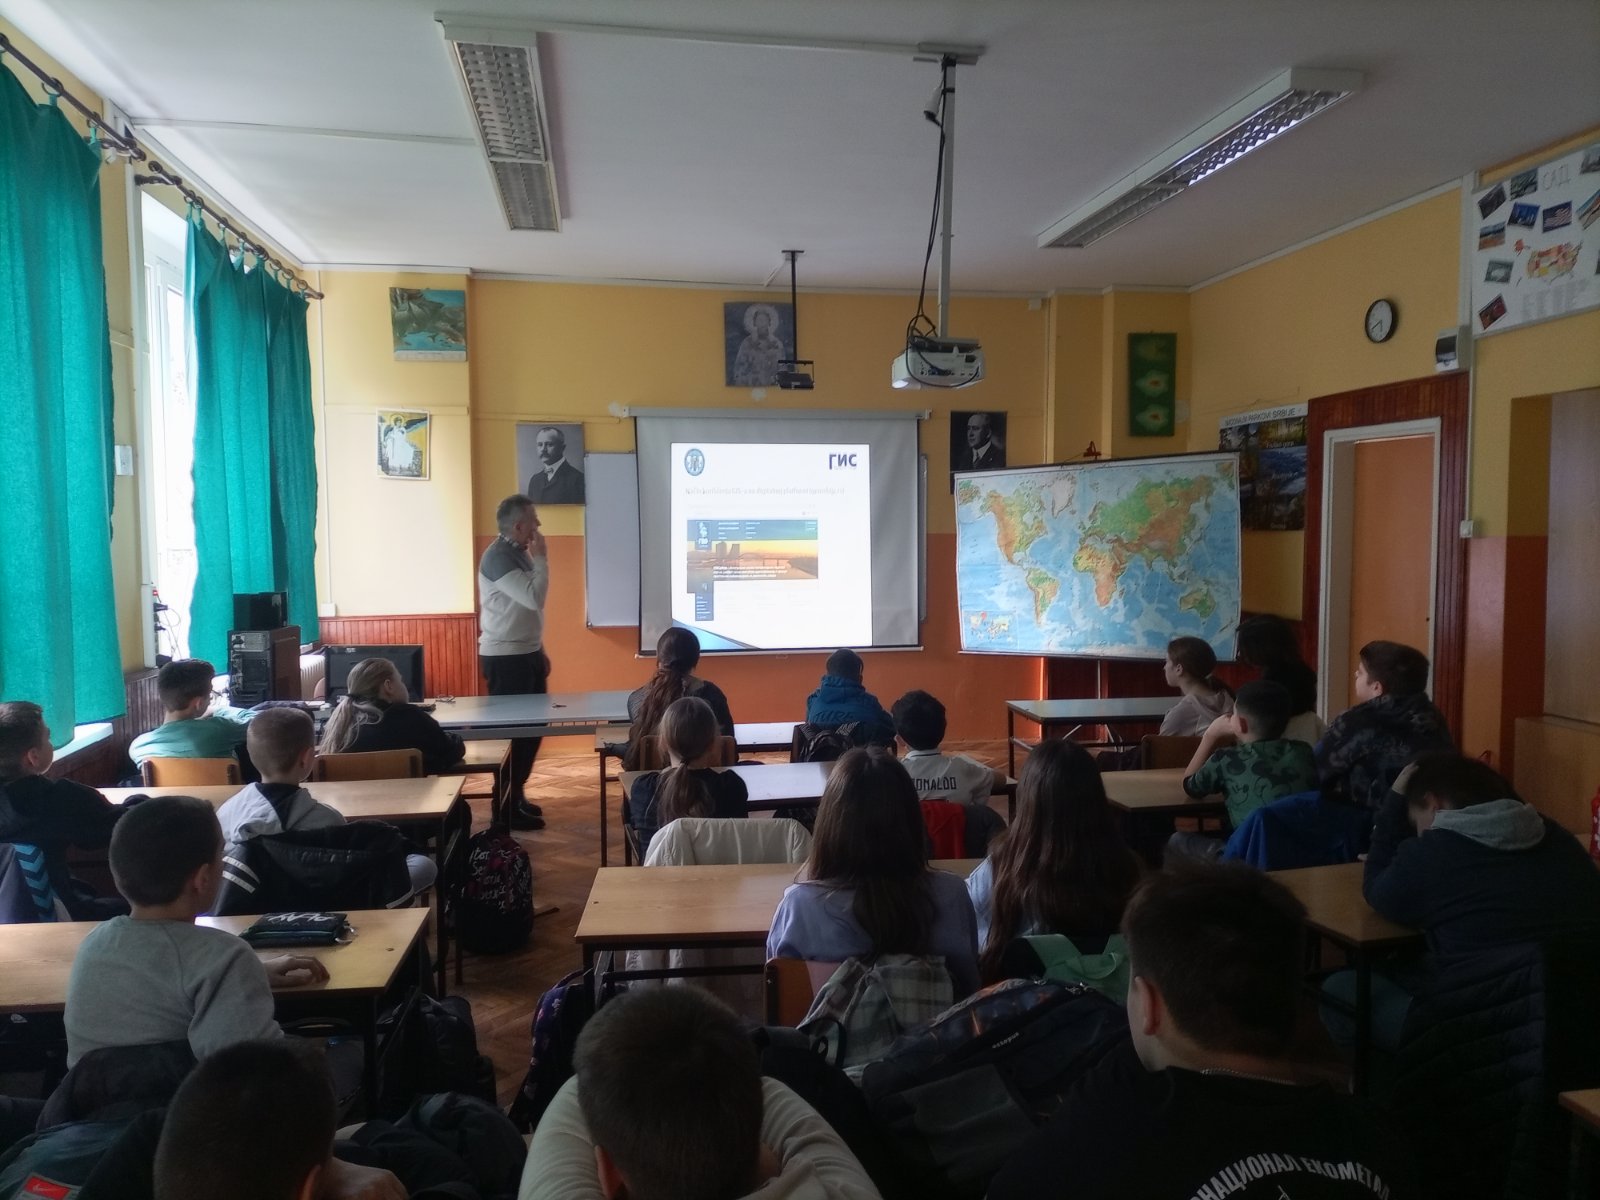 You are currently viewing Održana GIS prezentacija učenicima 6.razreda Osnovne škole ”Servo Mihalj” u Zrenjaninu